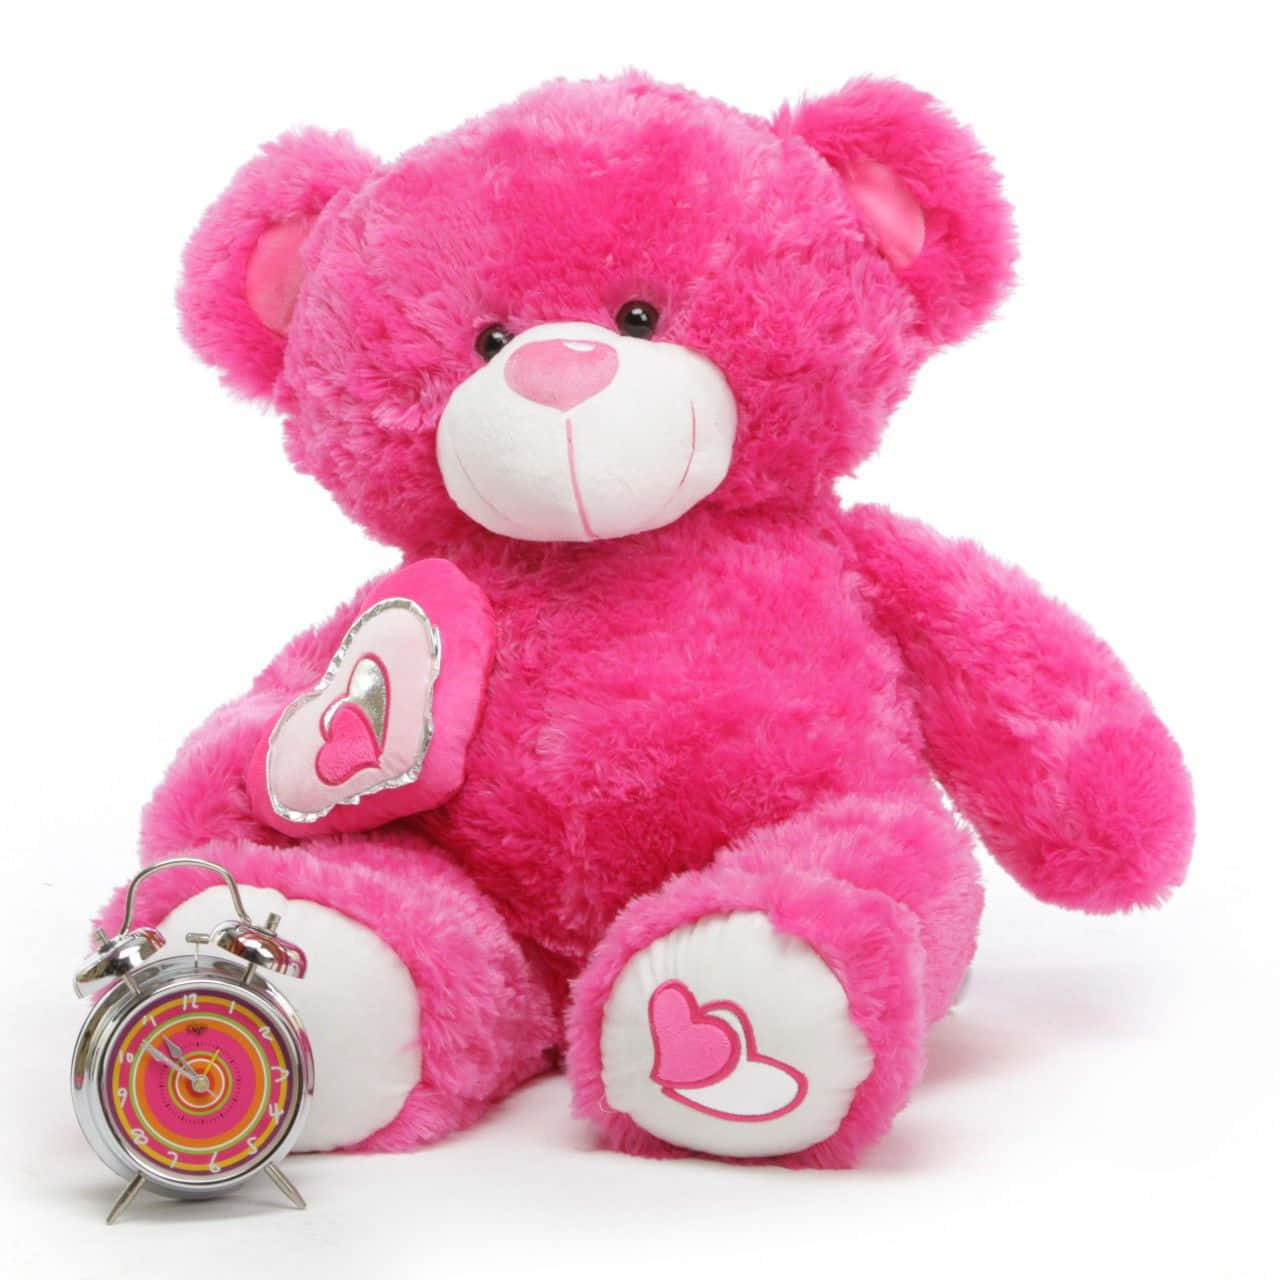 Cute Pink Teddy Bear Alarm Clock Background